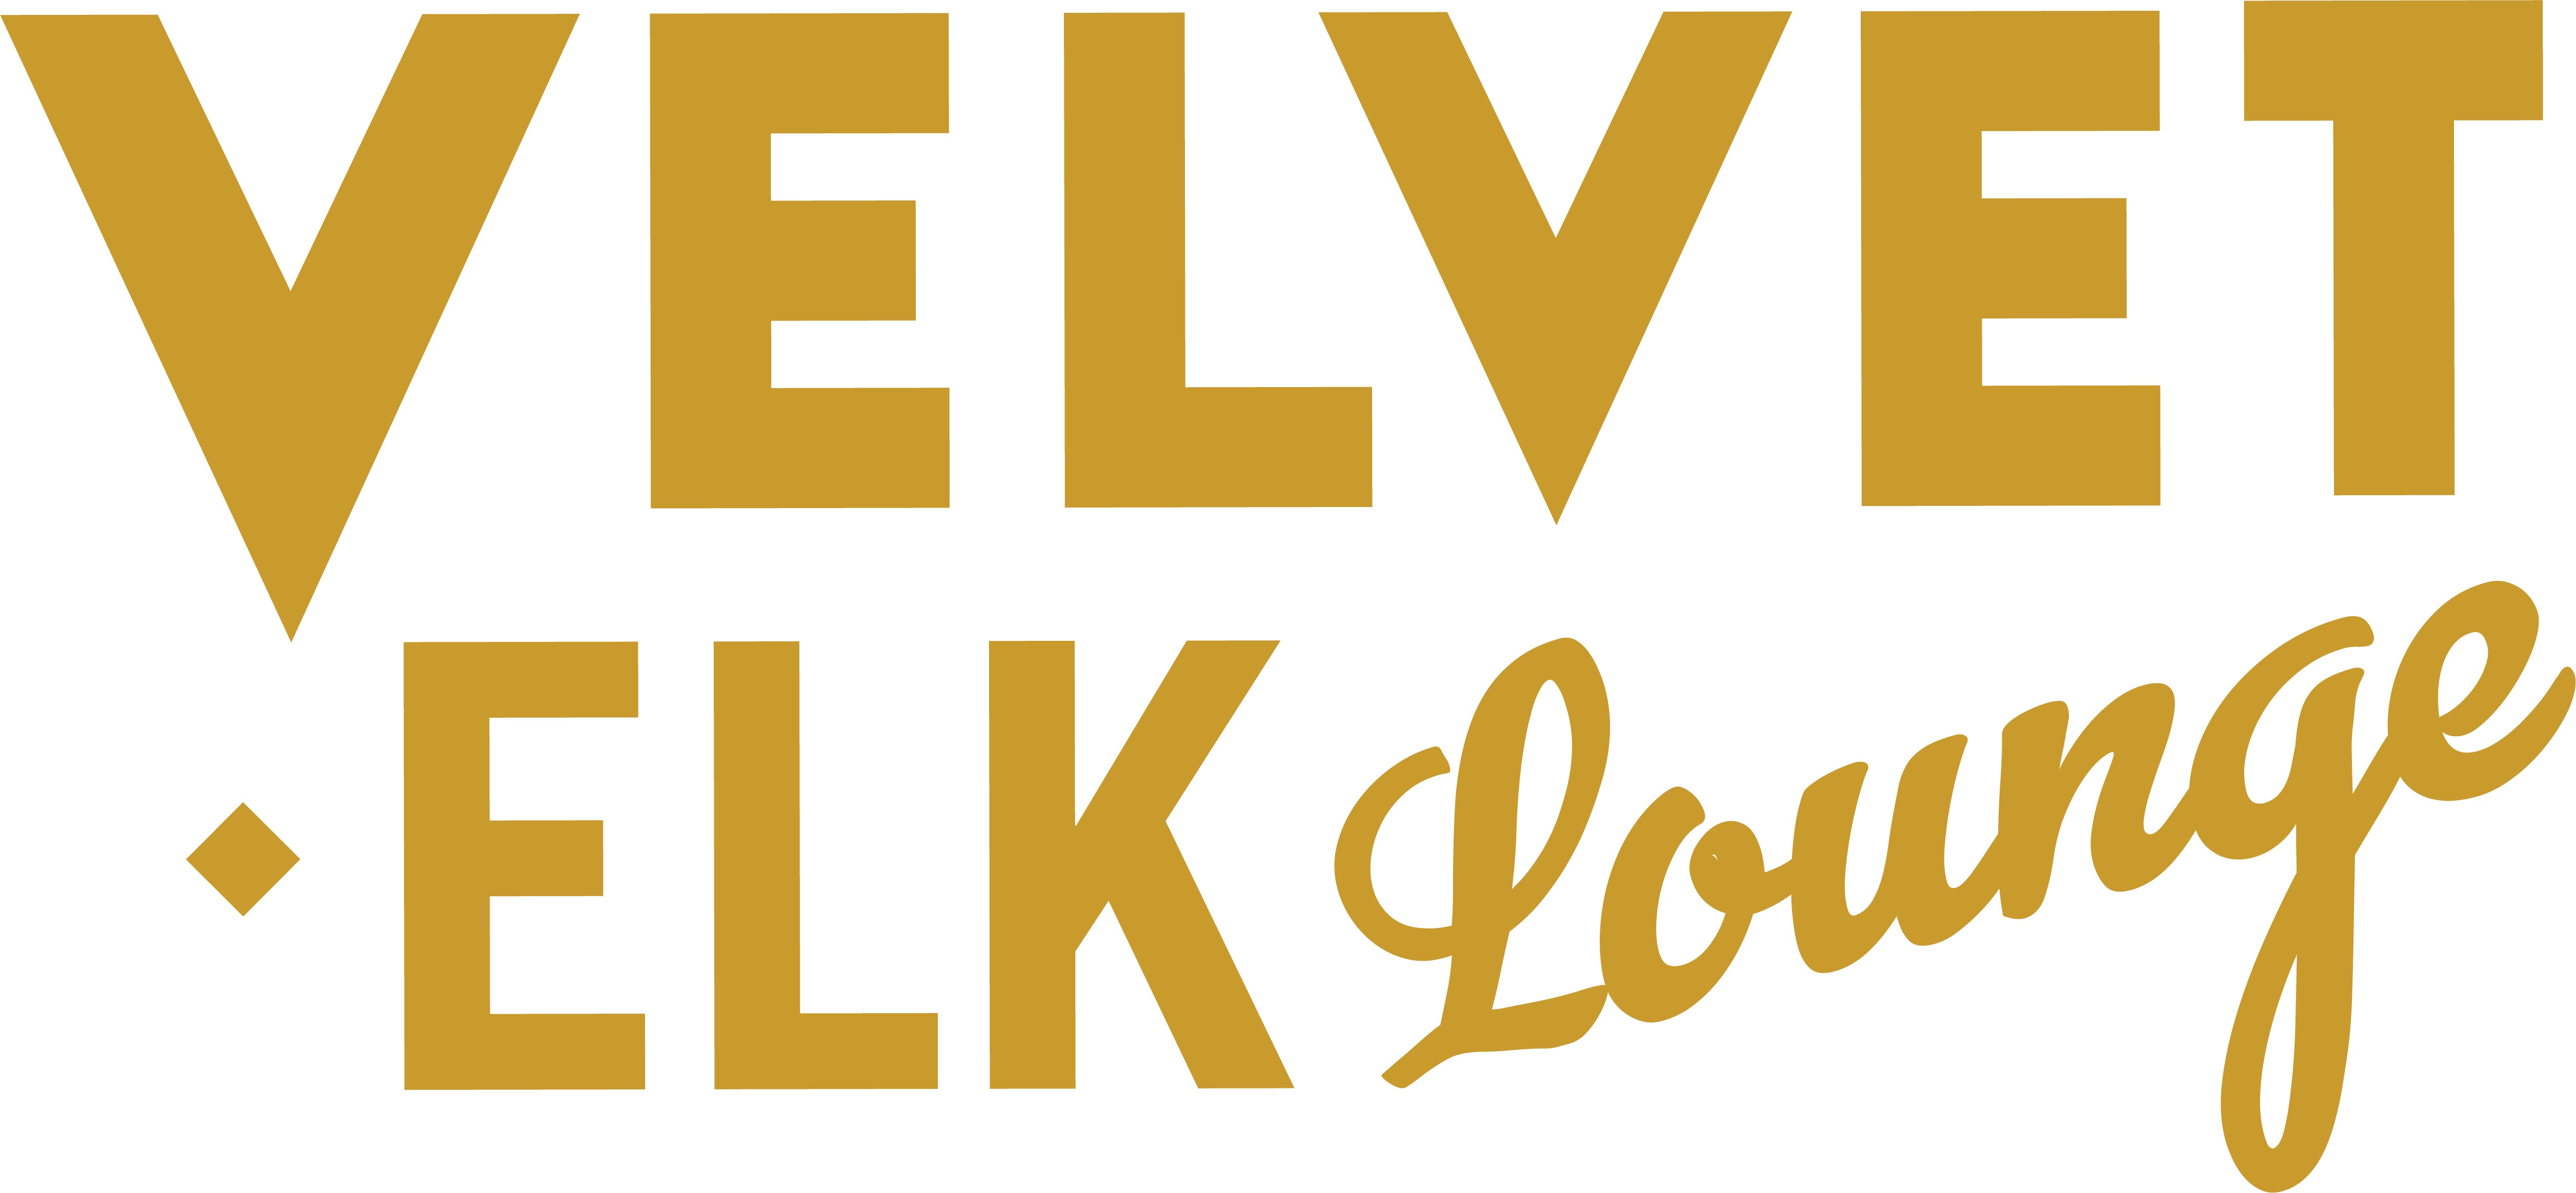 Velvet Elk Lounge Announces Exciting April Line-Up